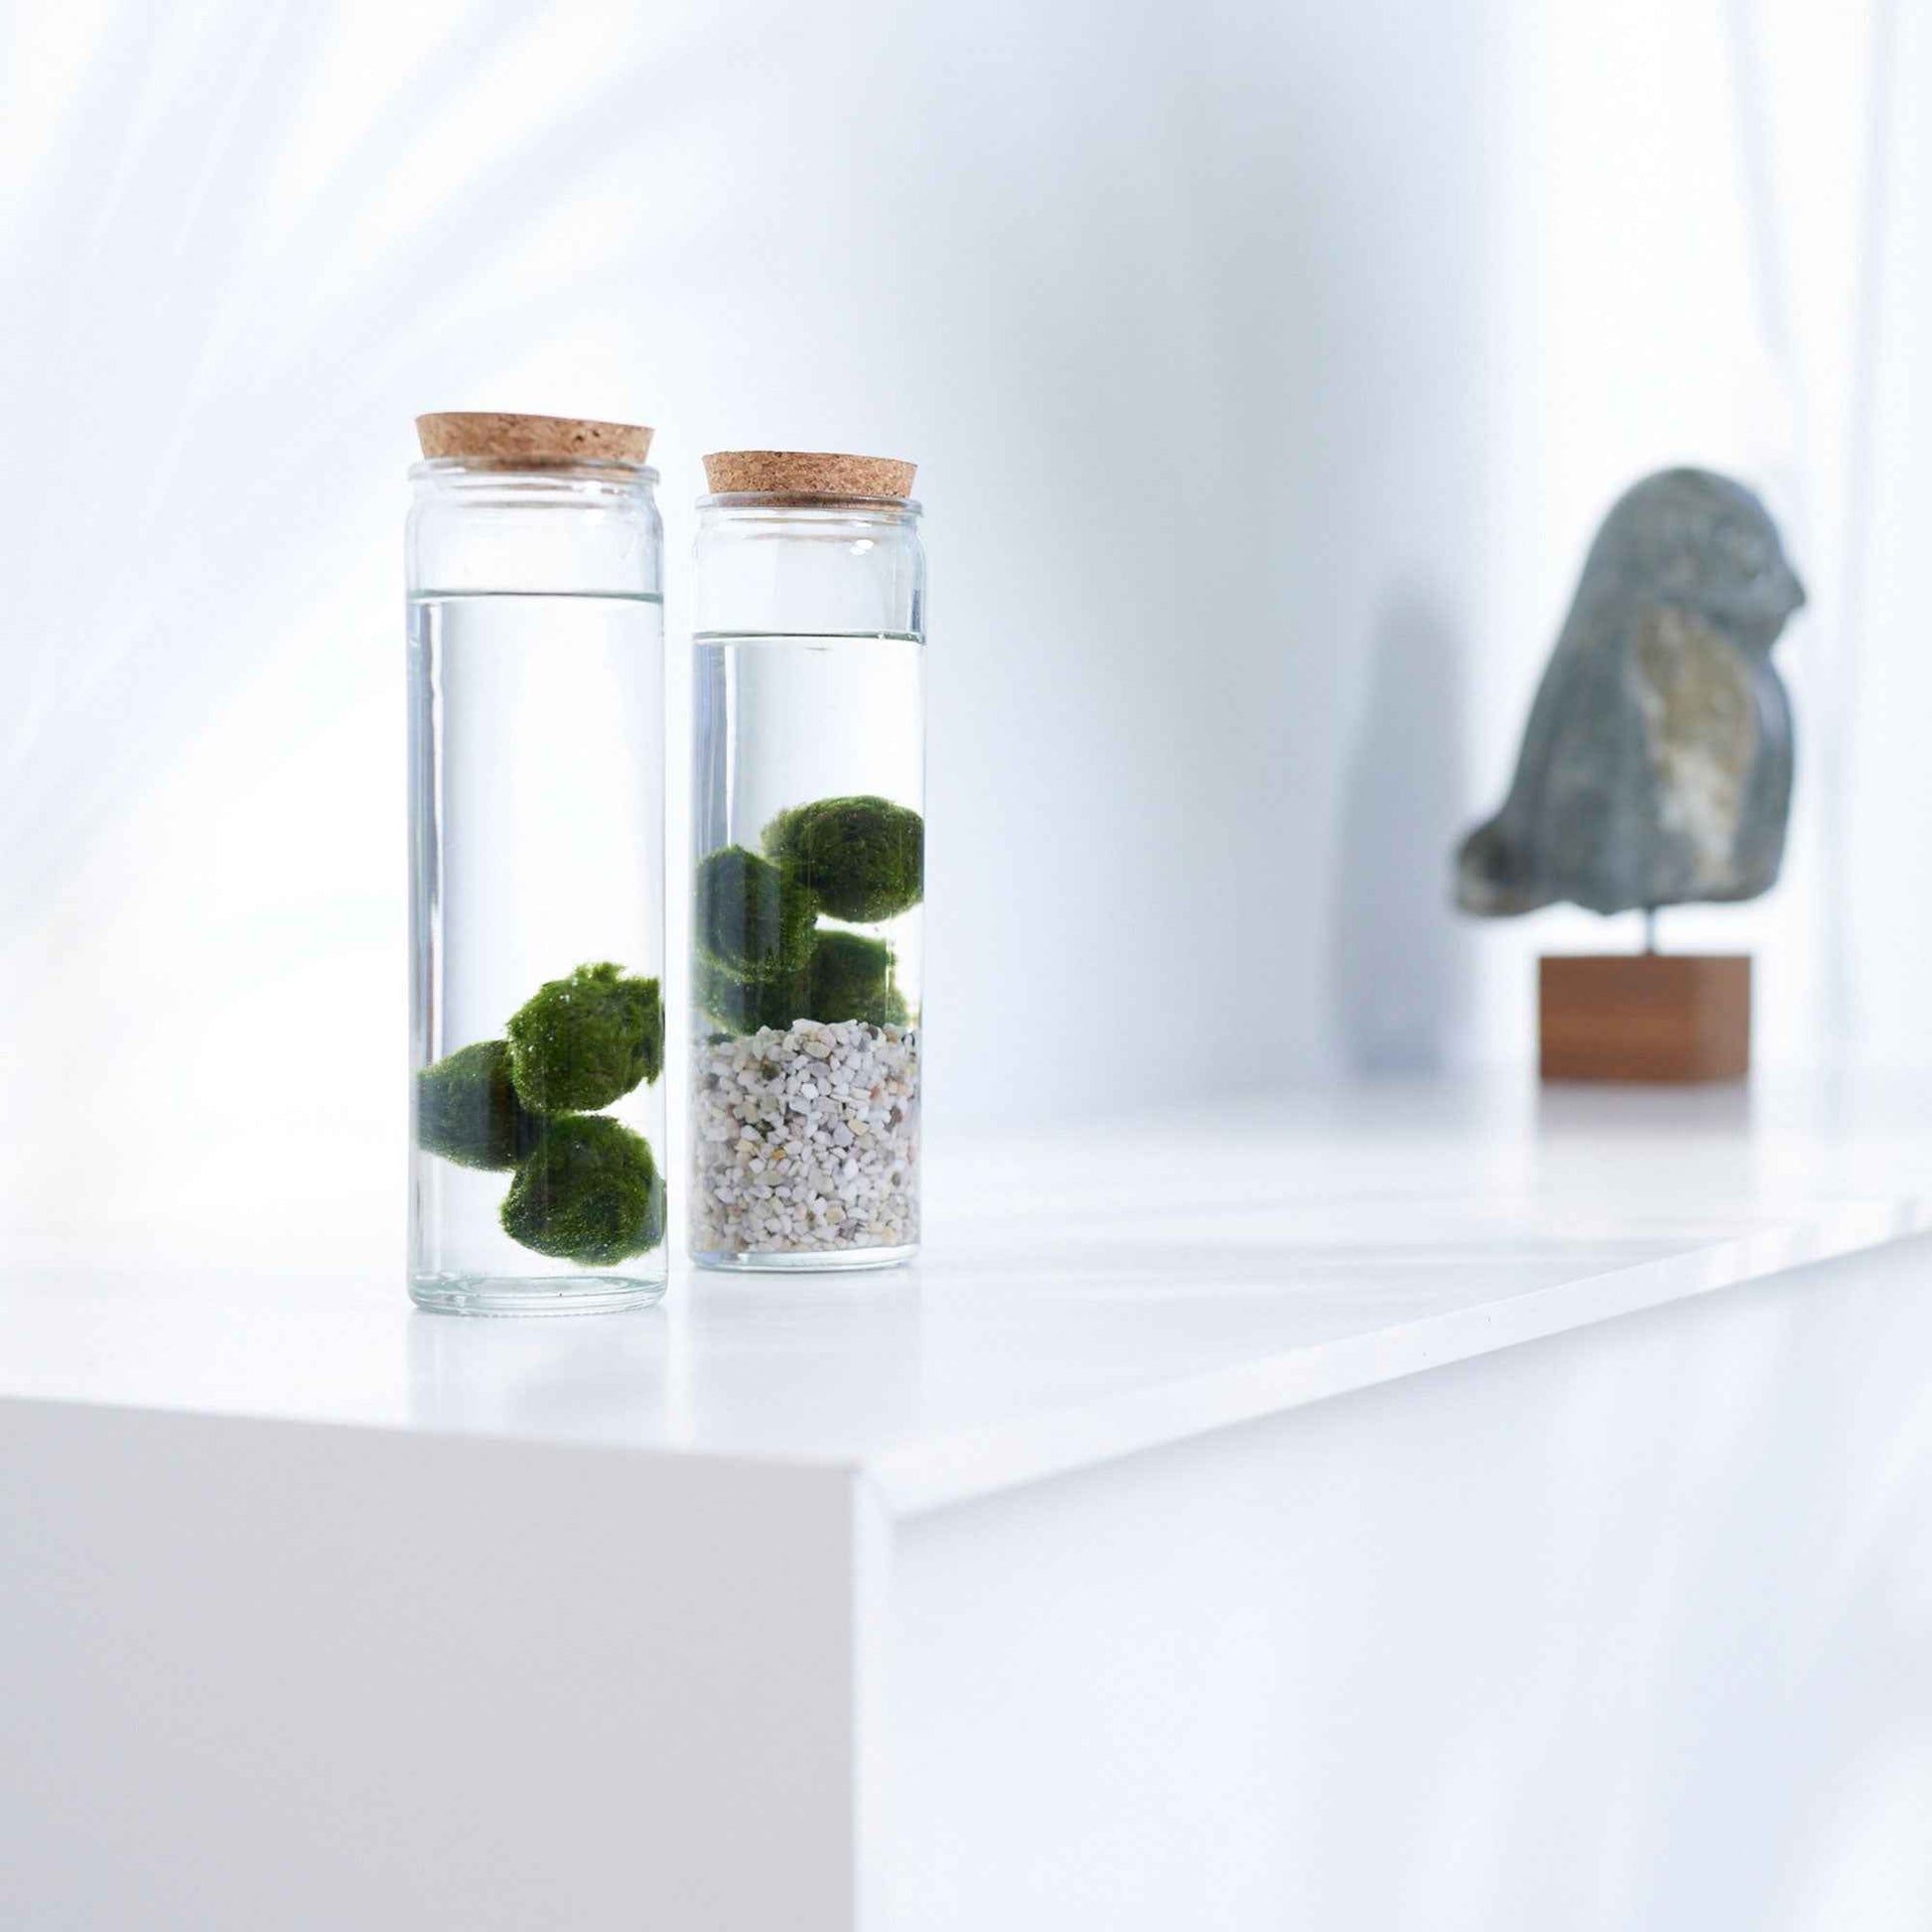 3x Marimo Boule de mousse  Chladophora  avec verre - Plantes d'intérieur